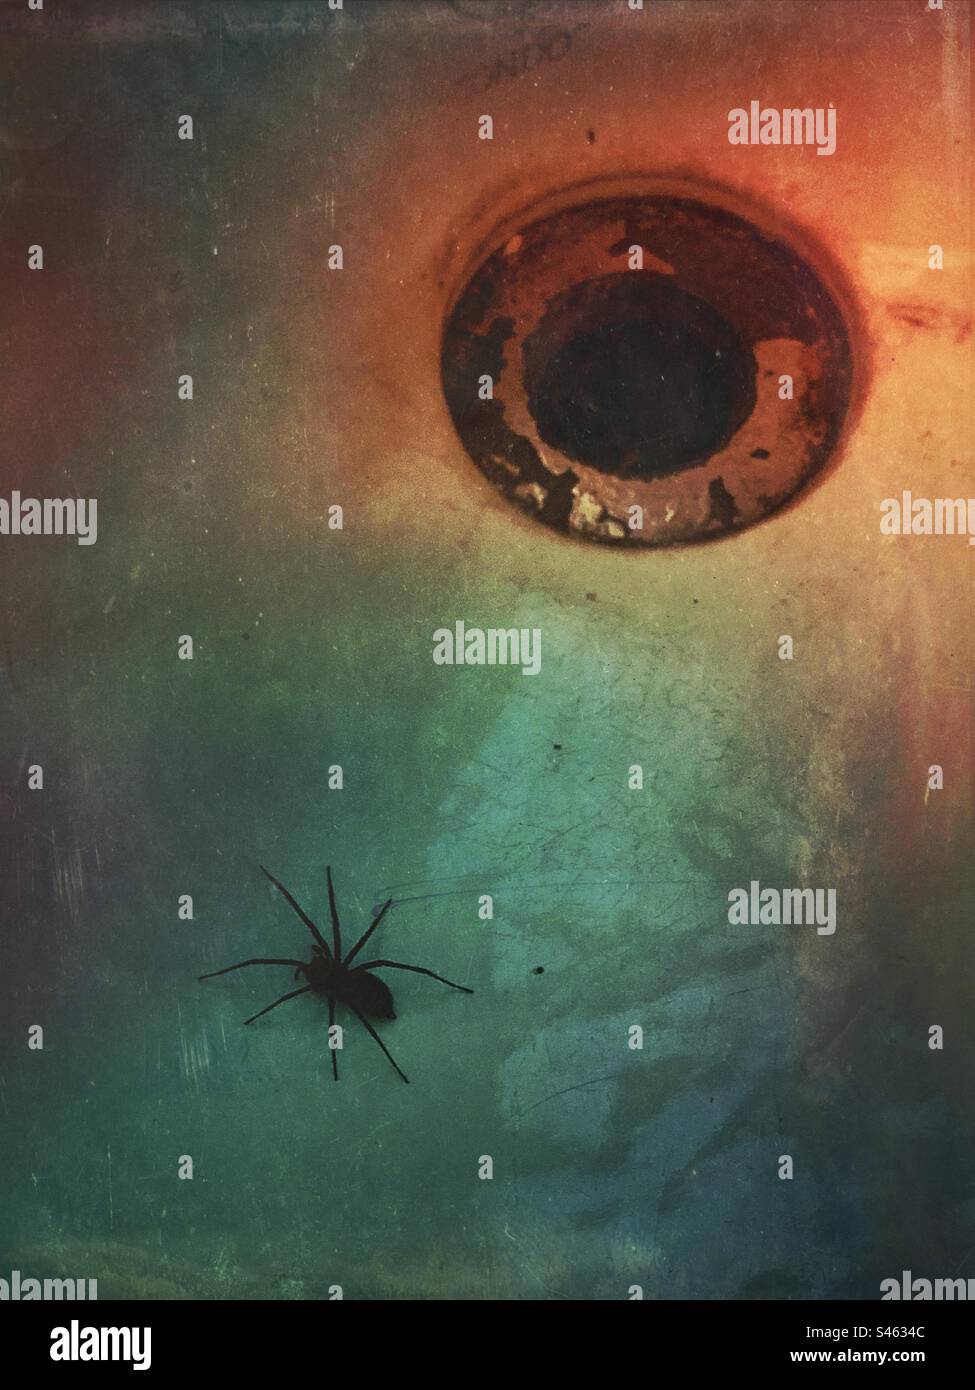 Eine eingeschlossene Spinne in einem Badezimmer/Küchenspüle mit einem offenen Loch - Spinnen im Hintergrund Stockfoto